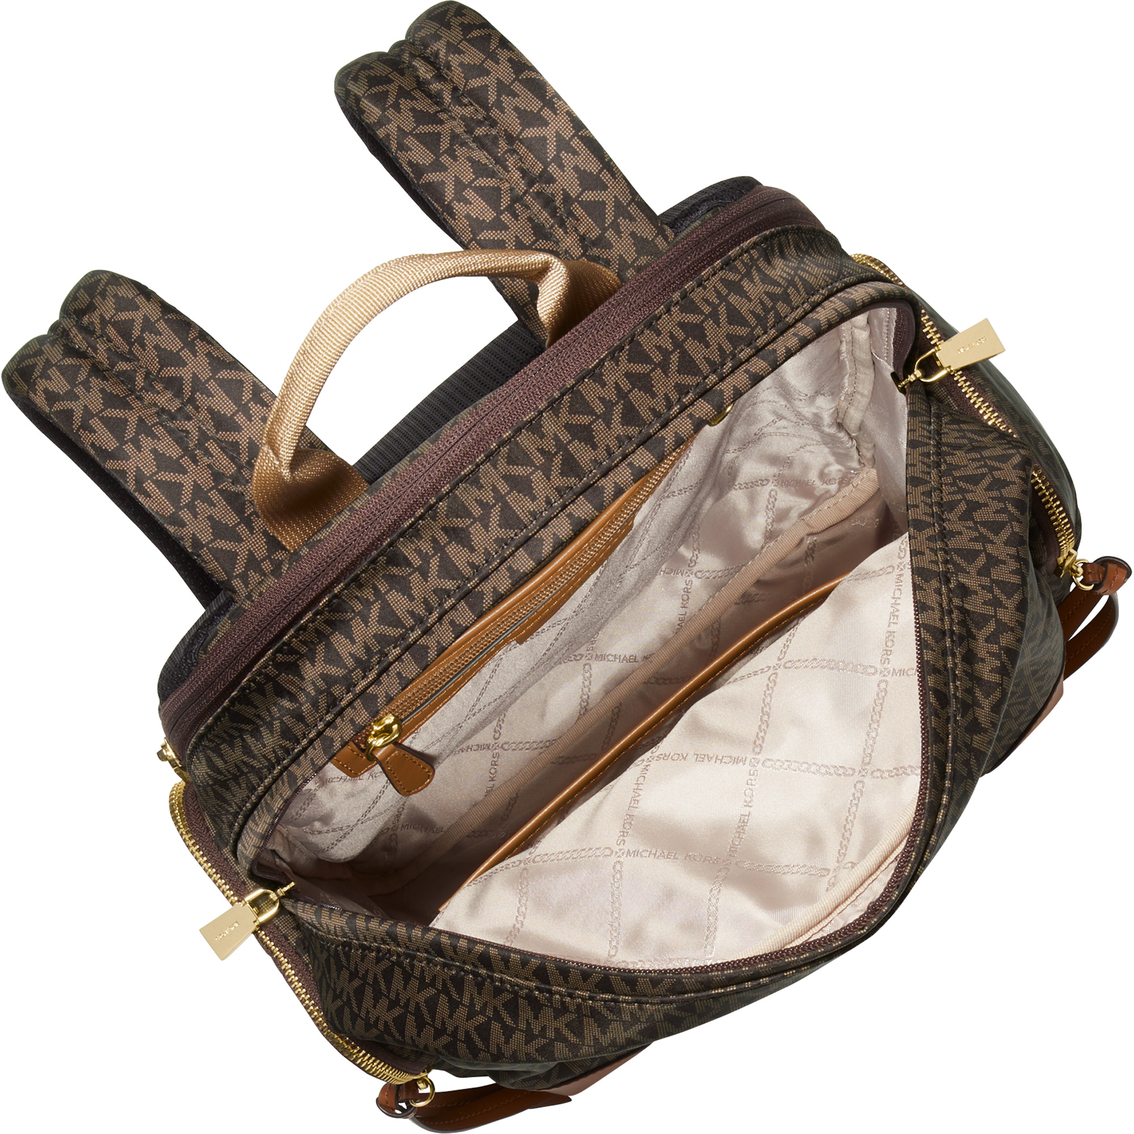 Michael Kors Prescott Large Backpack, Brown Acorn - Image 3 of 4